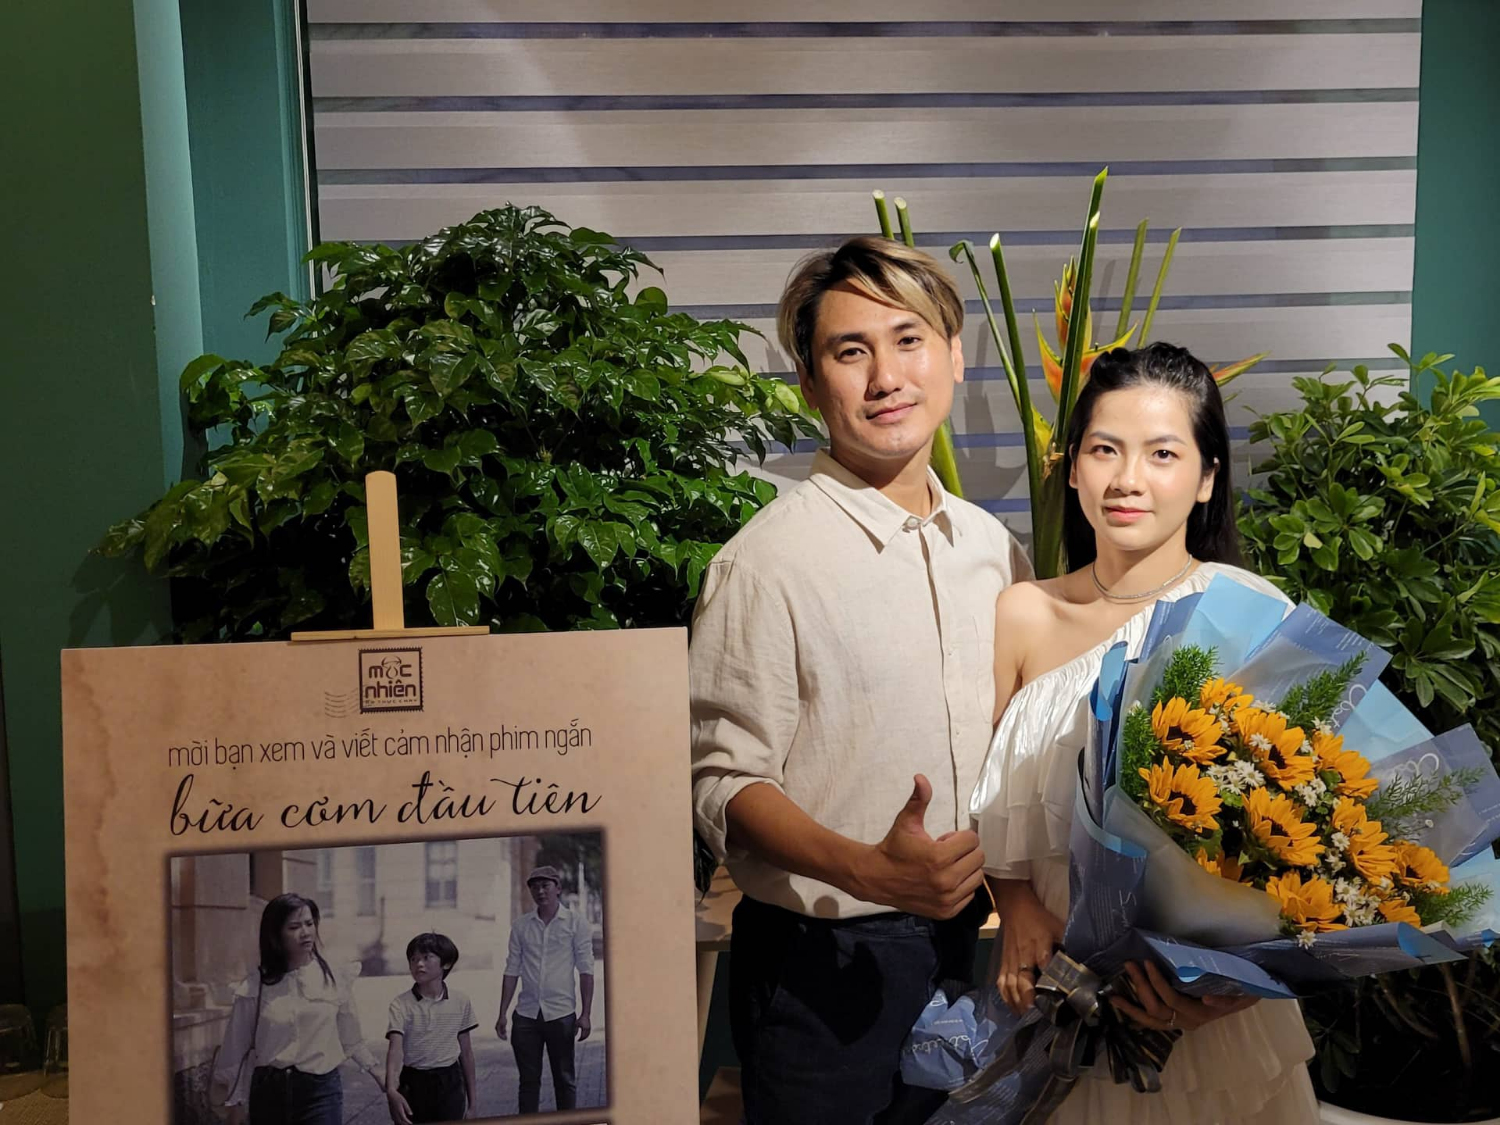 Đạo diễn Hoàng Minh Phi tái ngộ diễn viên trẻ Kim Ngọc trong phim ngắn 'Bữa cơm đầu tiên'